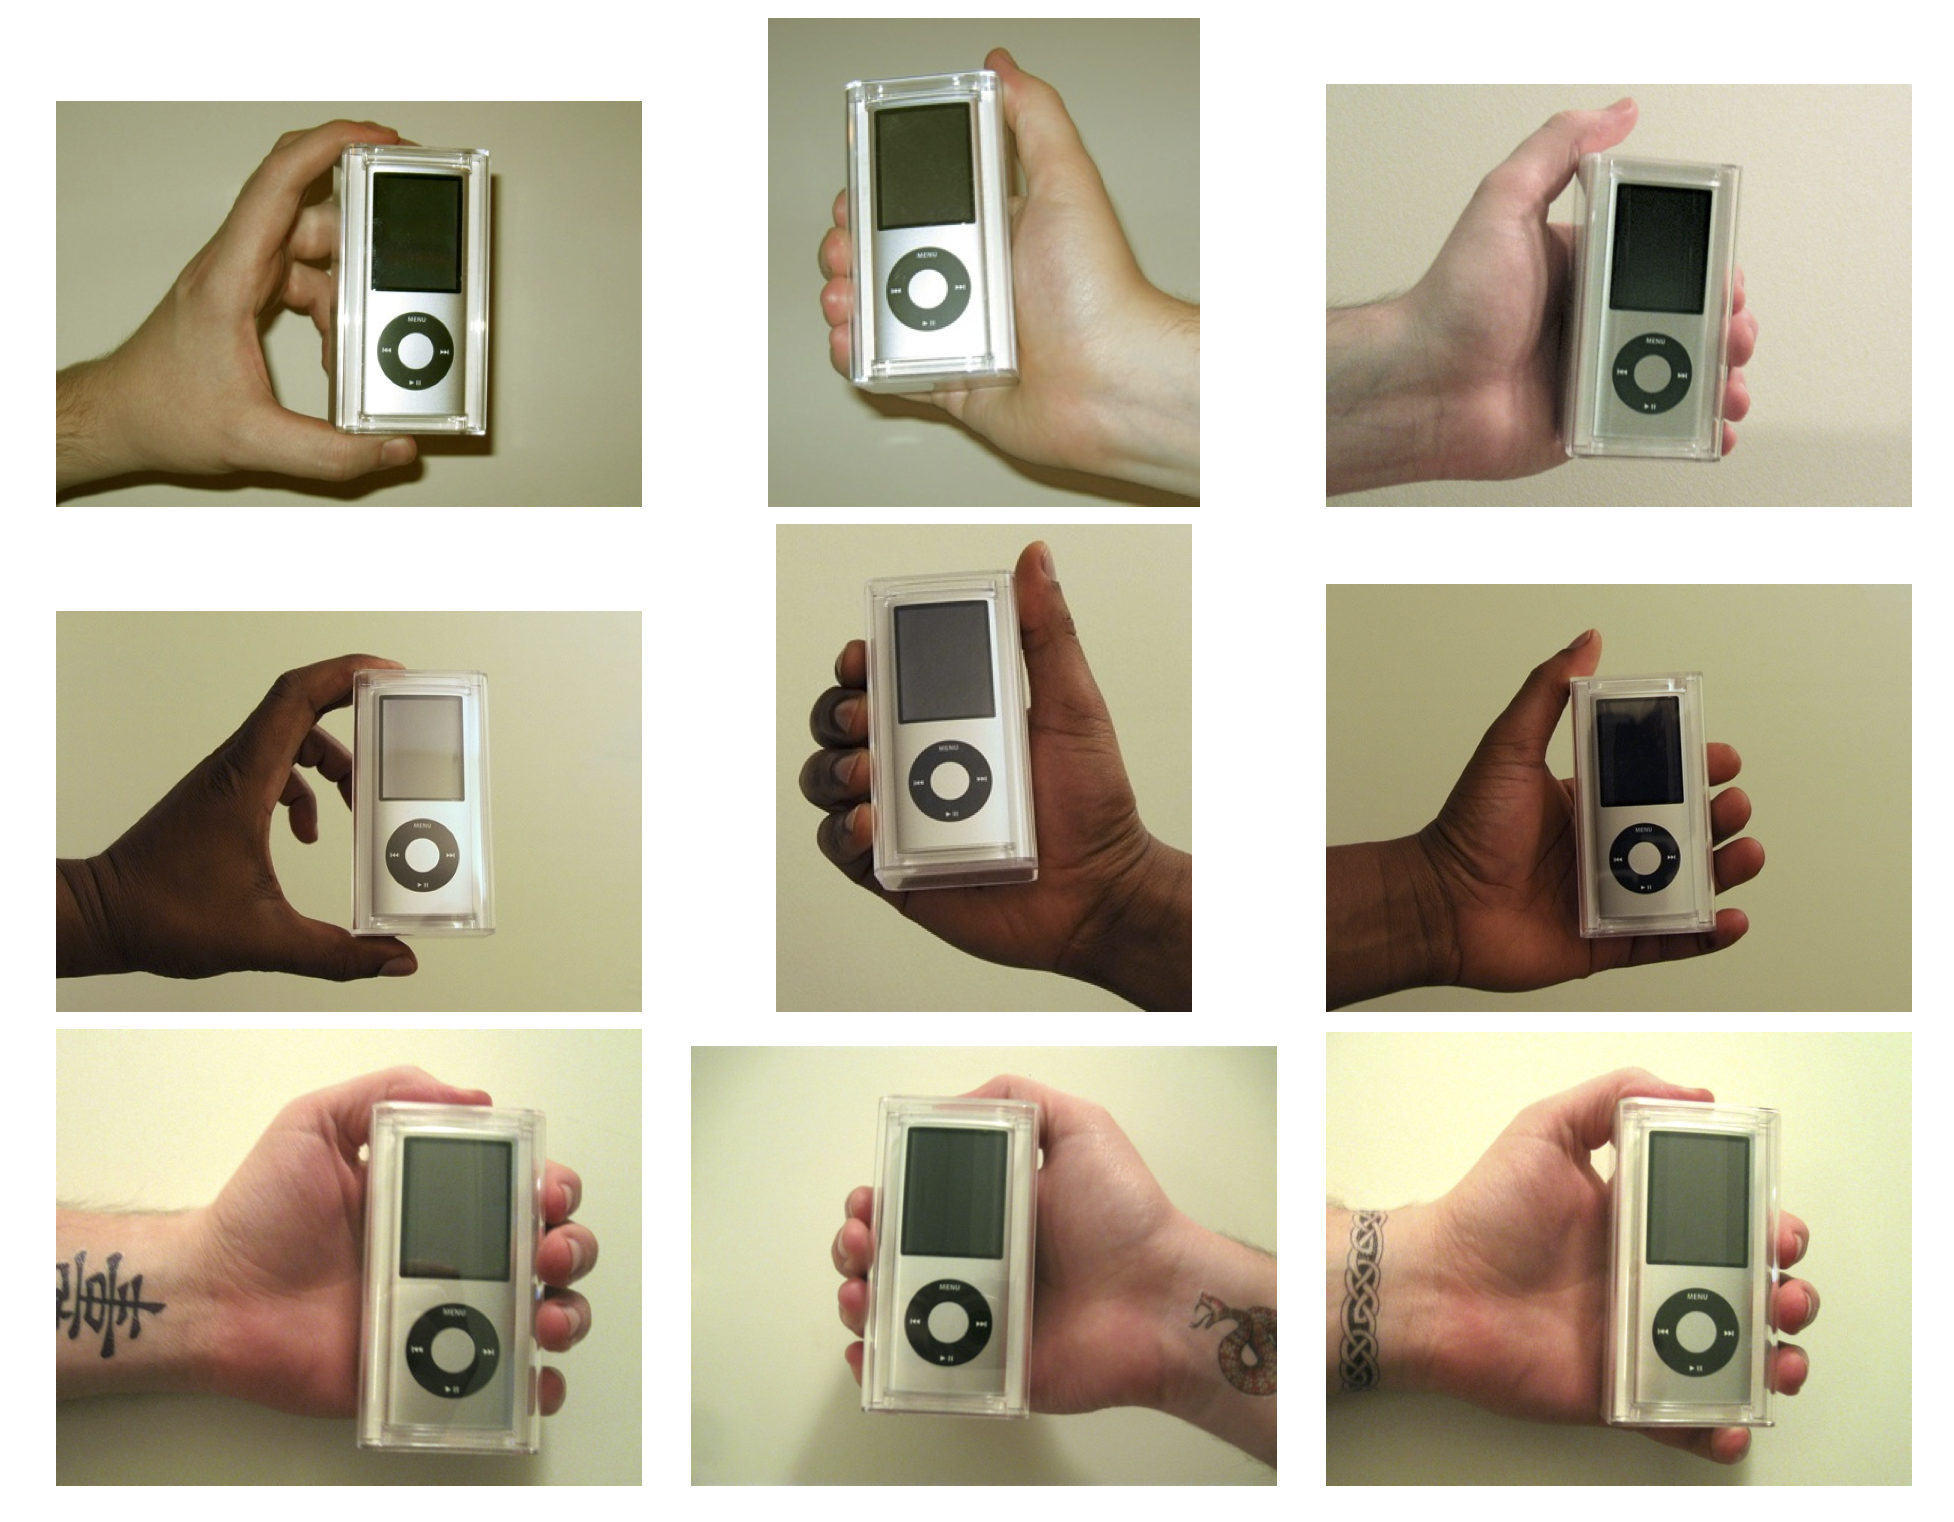 Figura 4.12: Mâinile utilizate în experimentul de Doleac și Stein (2013). iPod-uri au fost vândute de către vânzători cu caracteristici diferite pentru a măsura discriminarea într-o piață online.